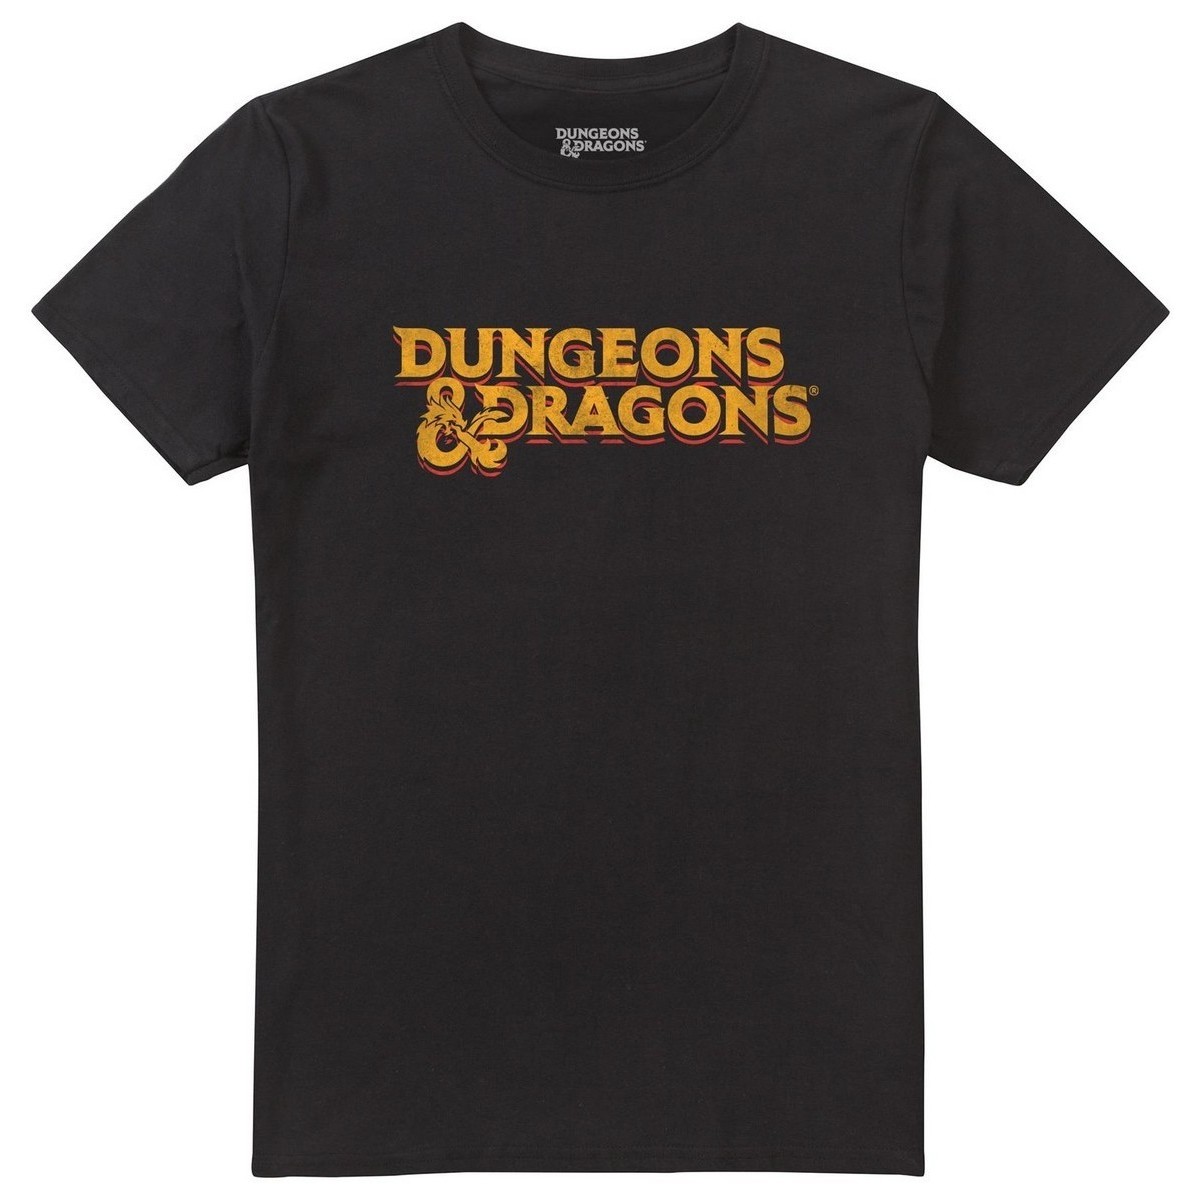 Vêtements Homme T-shirts manches longues Dungeons & Dragons 70's Noir